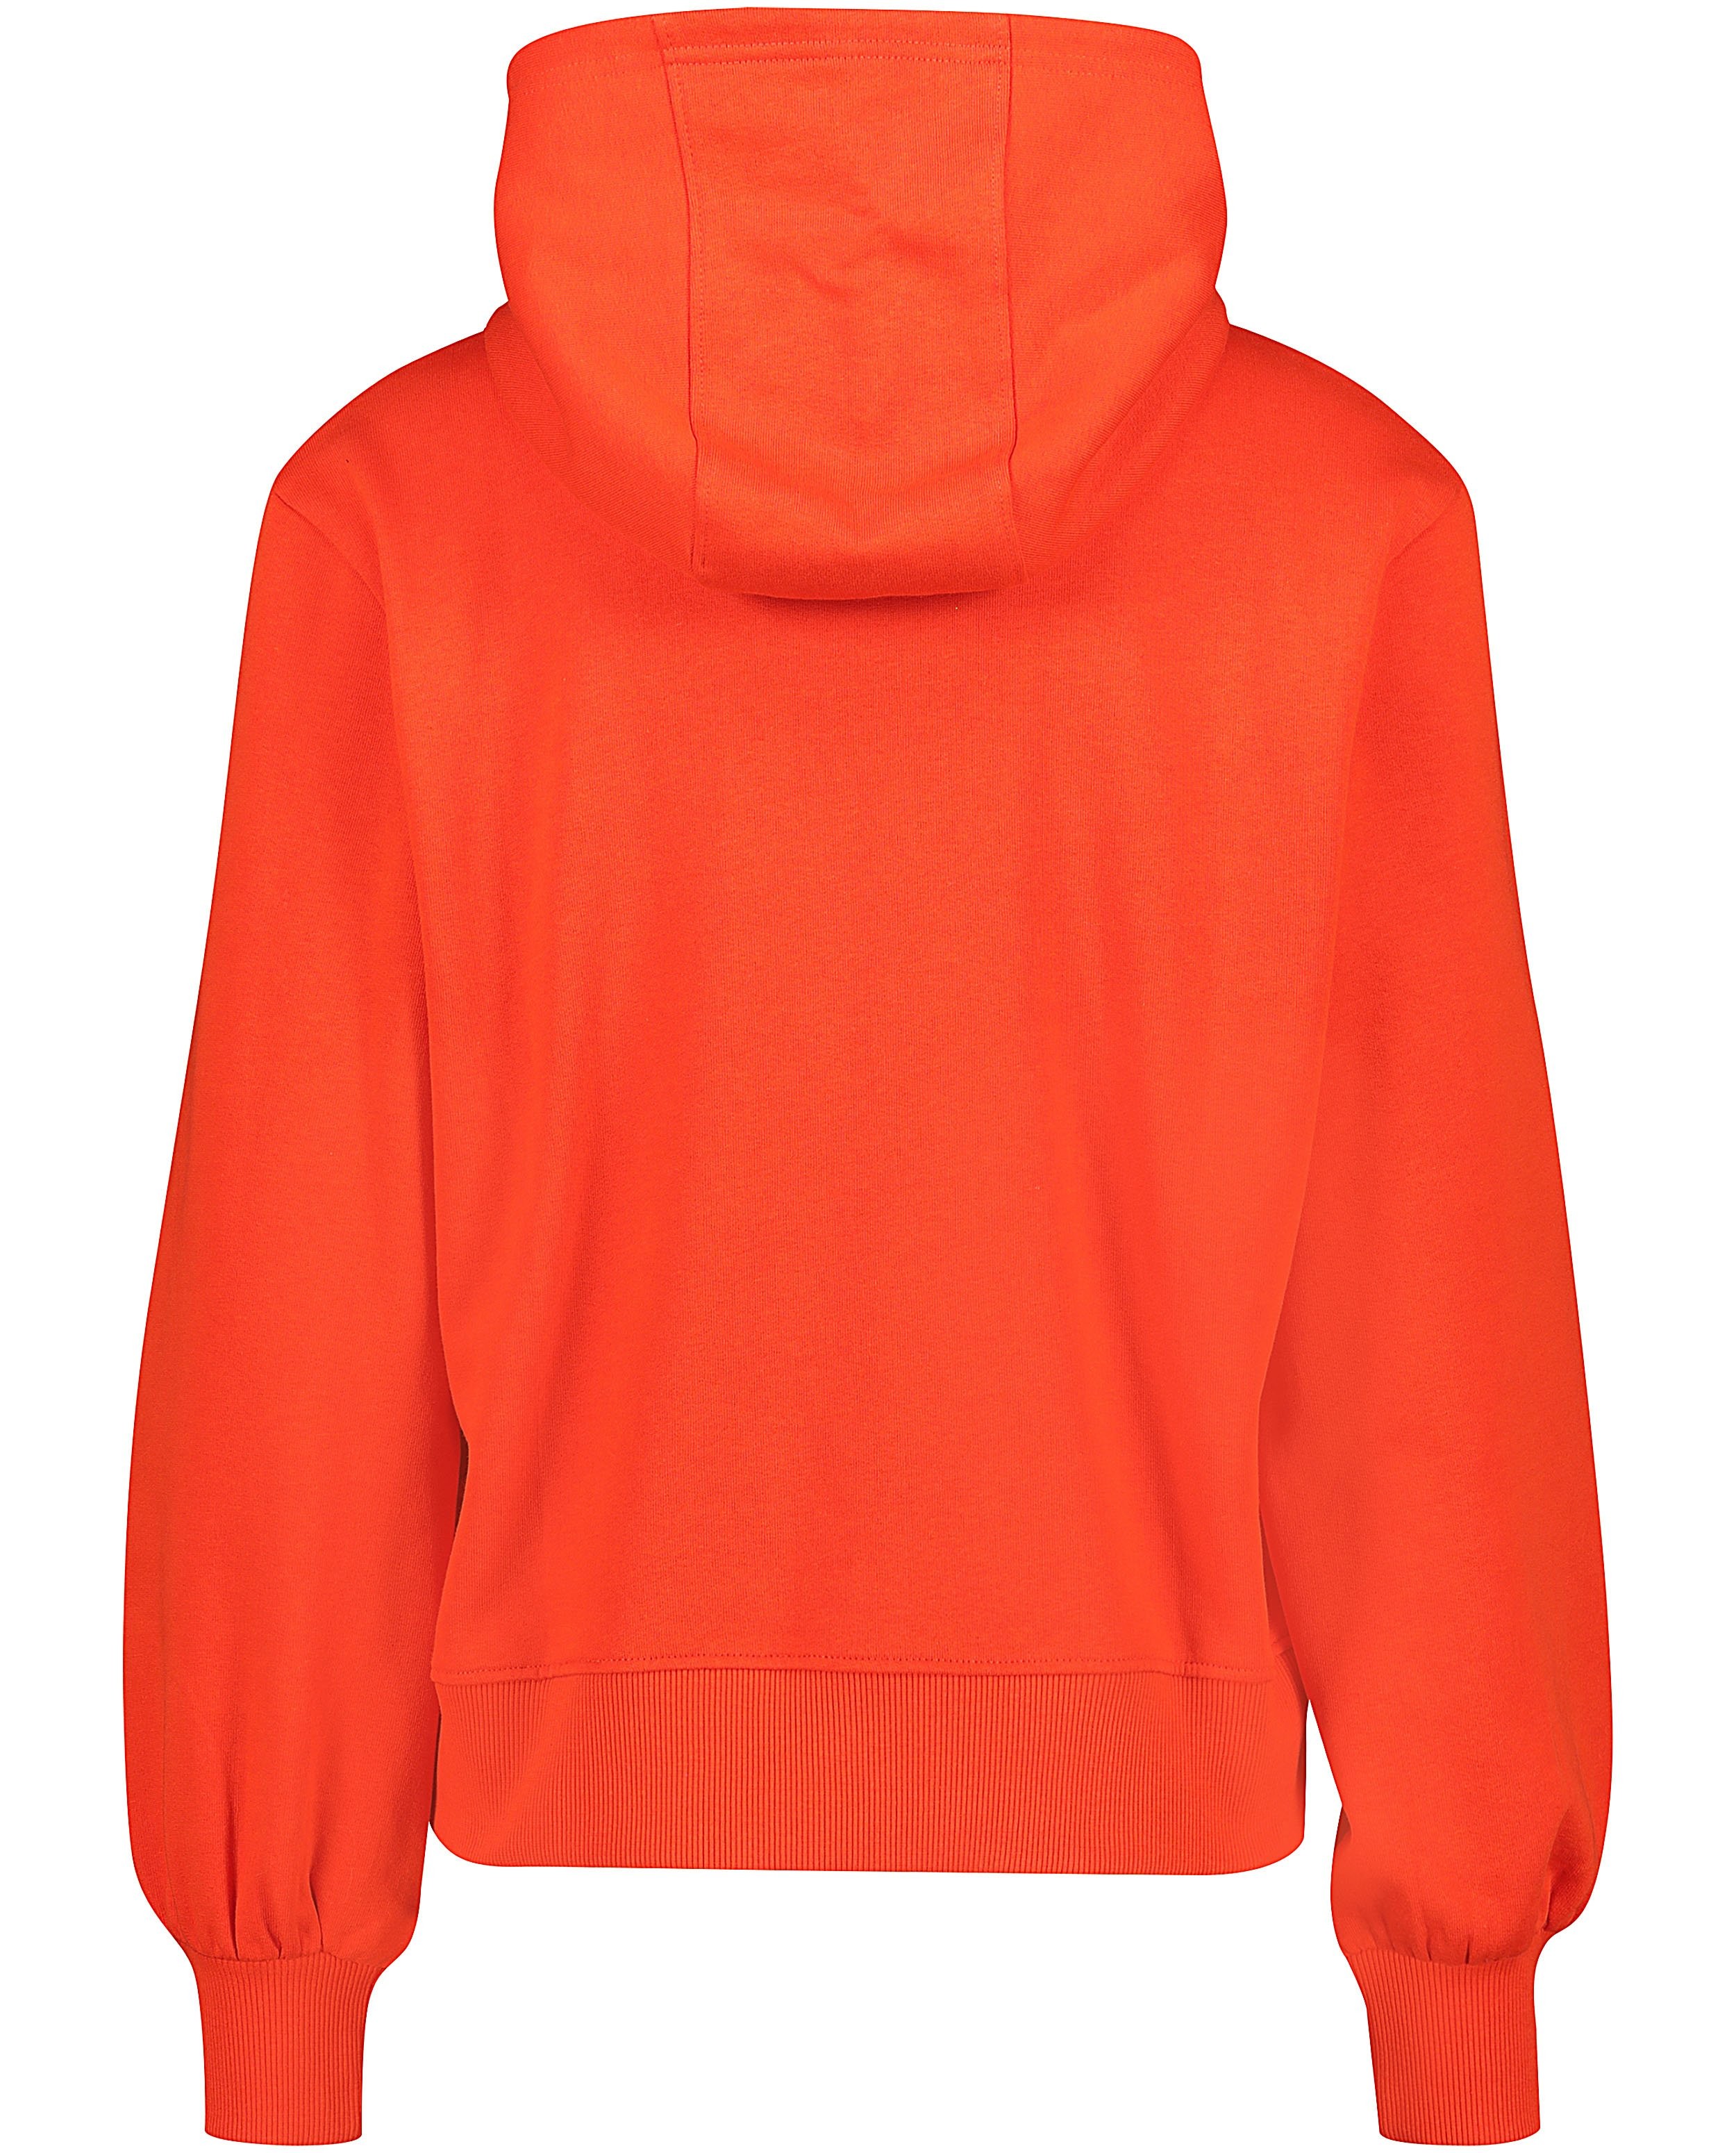 Sweats - oranje sweater